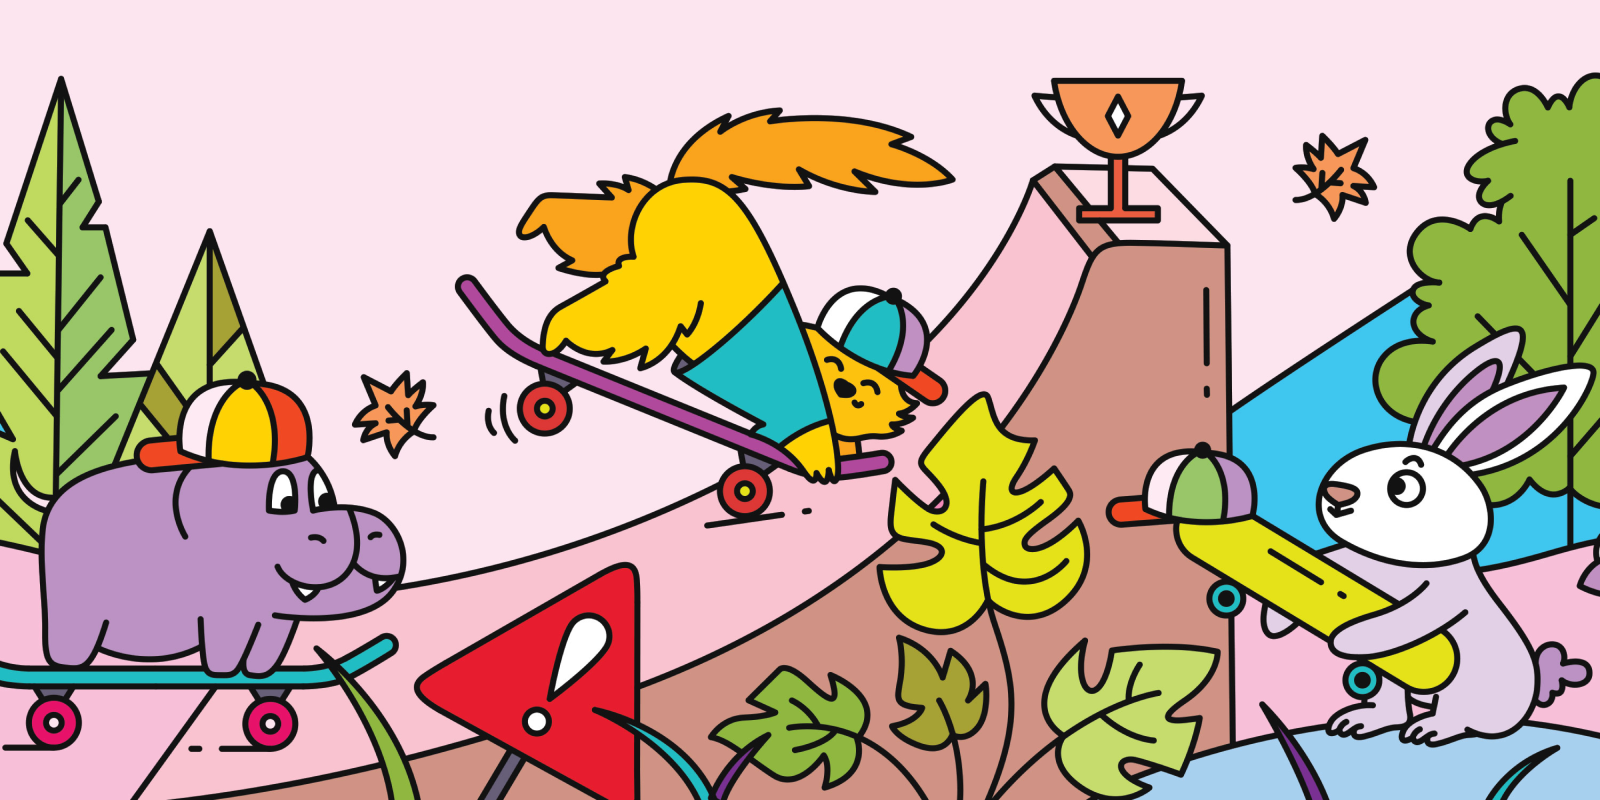 Illustration of animals having fun at a skatepark